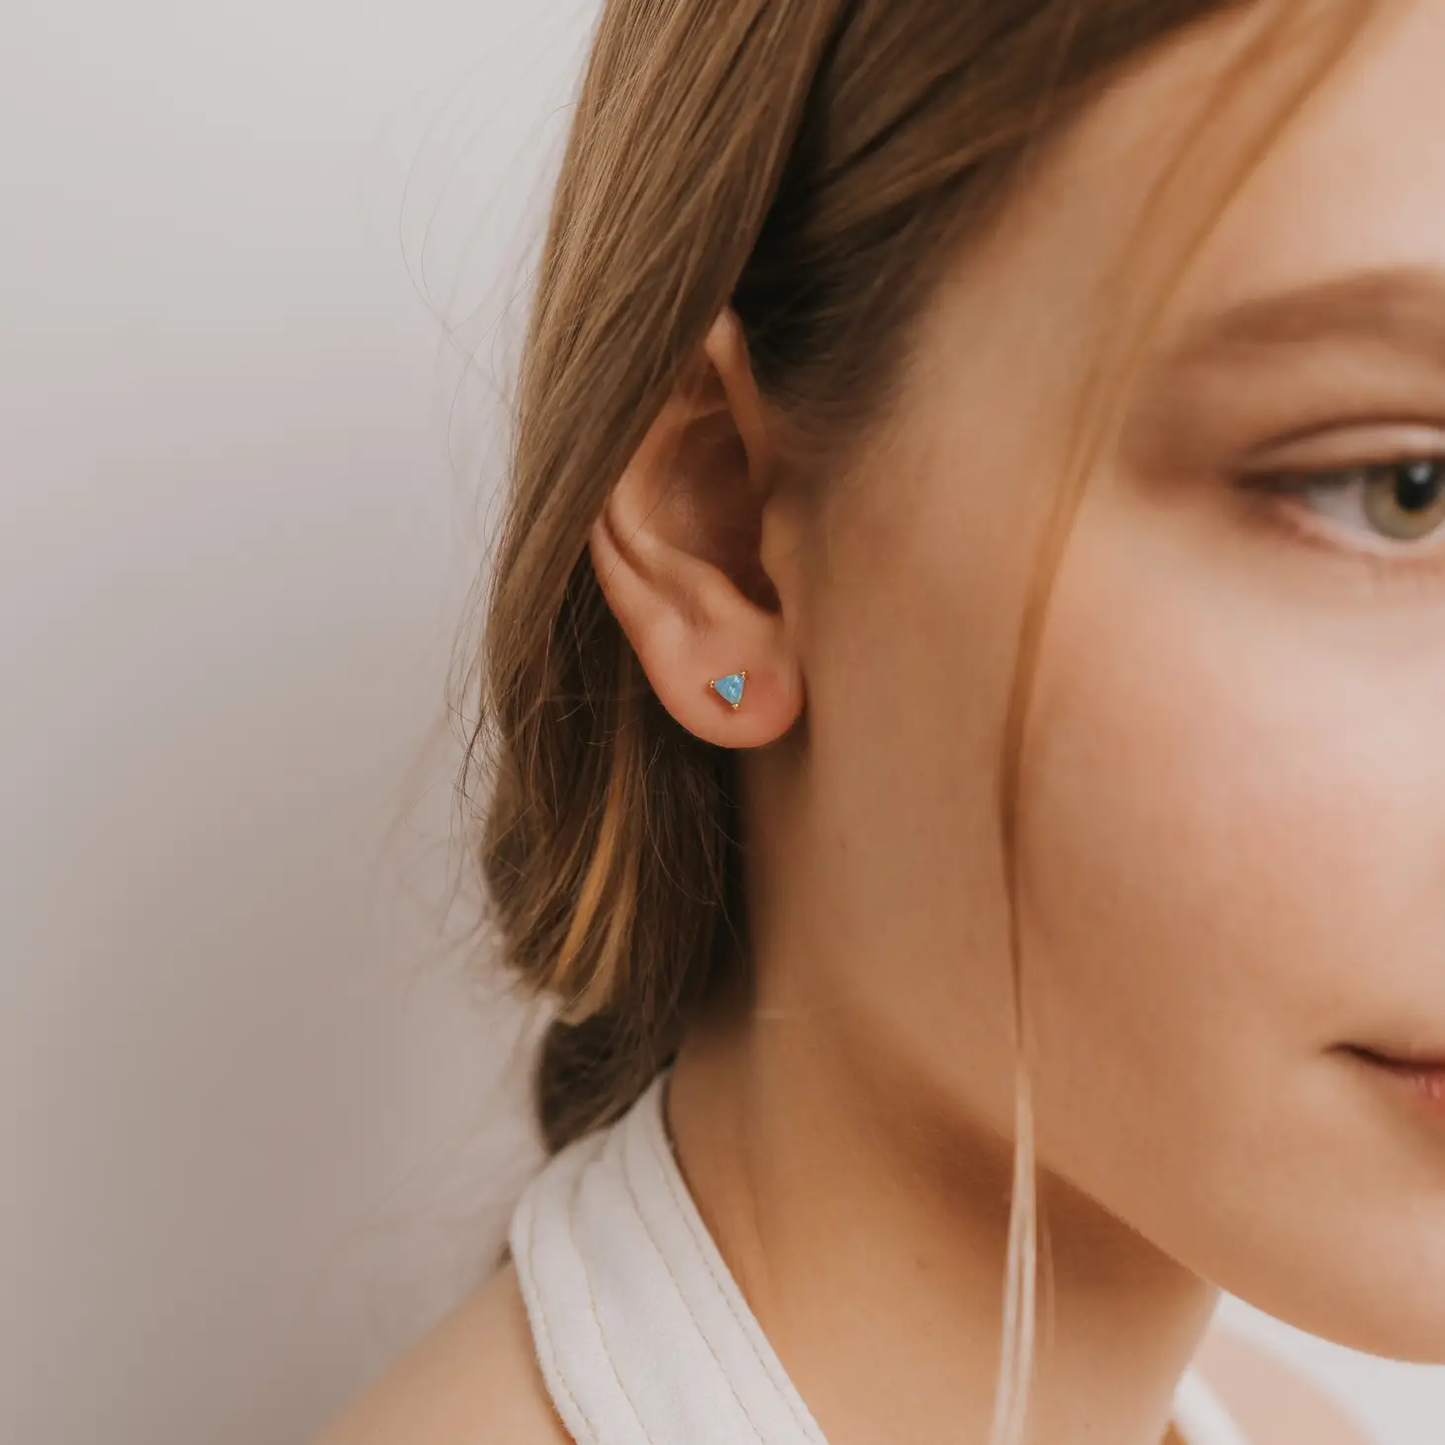 Mini Energy Earrings - Fire Opal